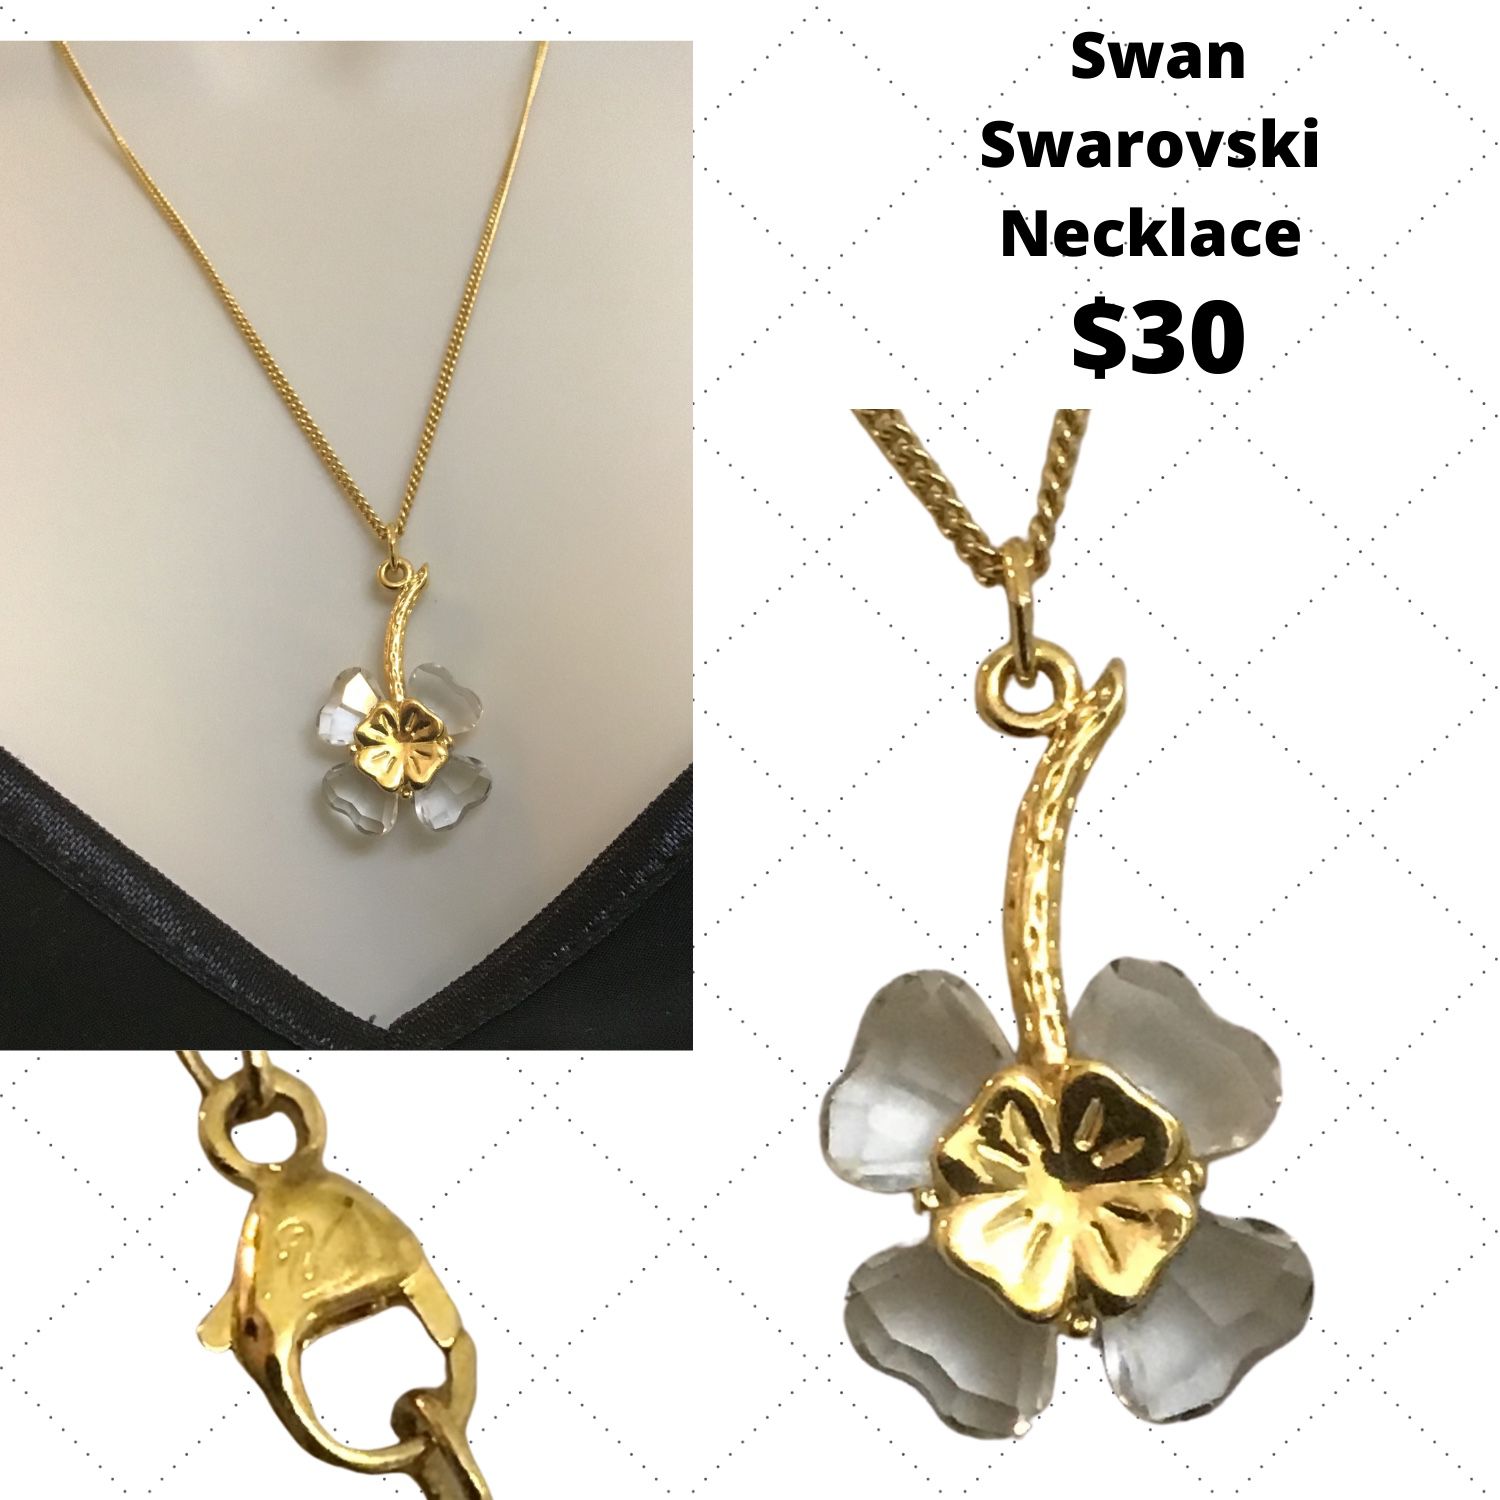 Swan Swarovski necklace